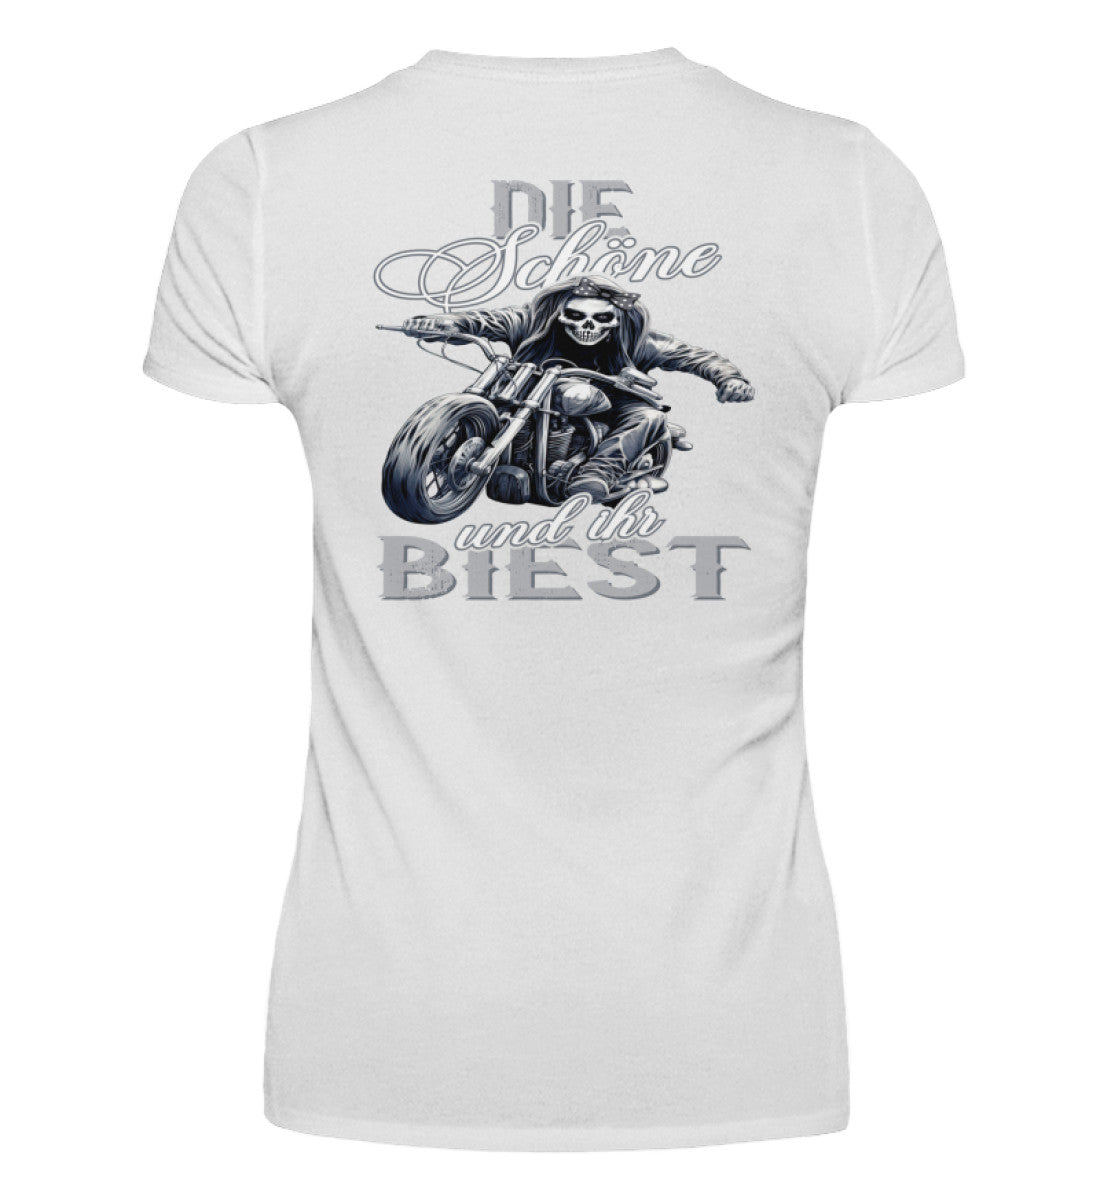 Ein Bikerin T-Shirt mit V-Ausschnitt für Motorradfahrerinnen von Wingbikers mit dem Aufdruck, Die Schöne und ihr Biest - mit Back Print, in weiß.